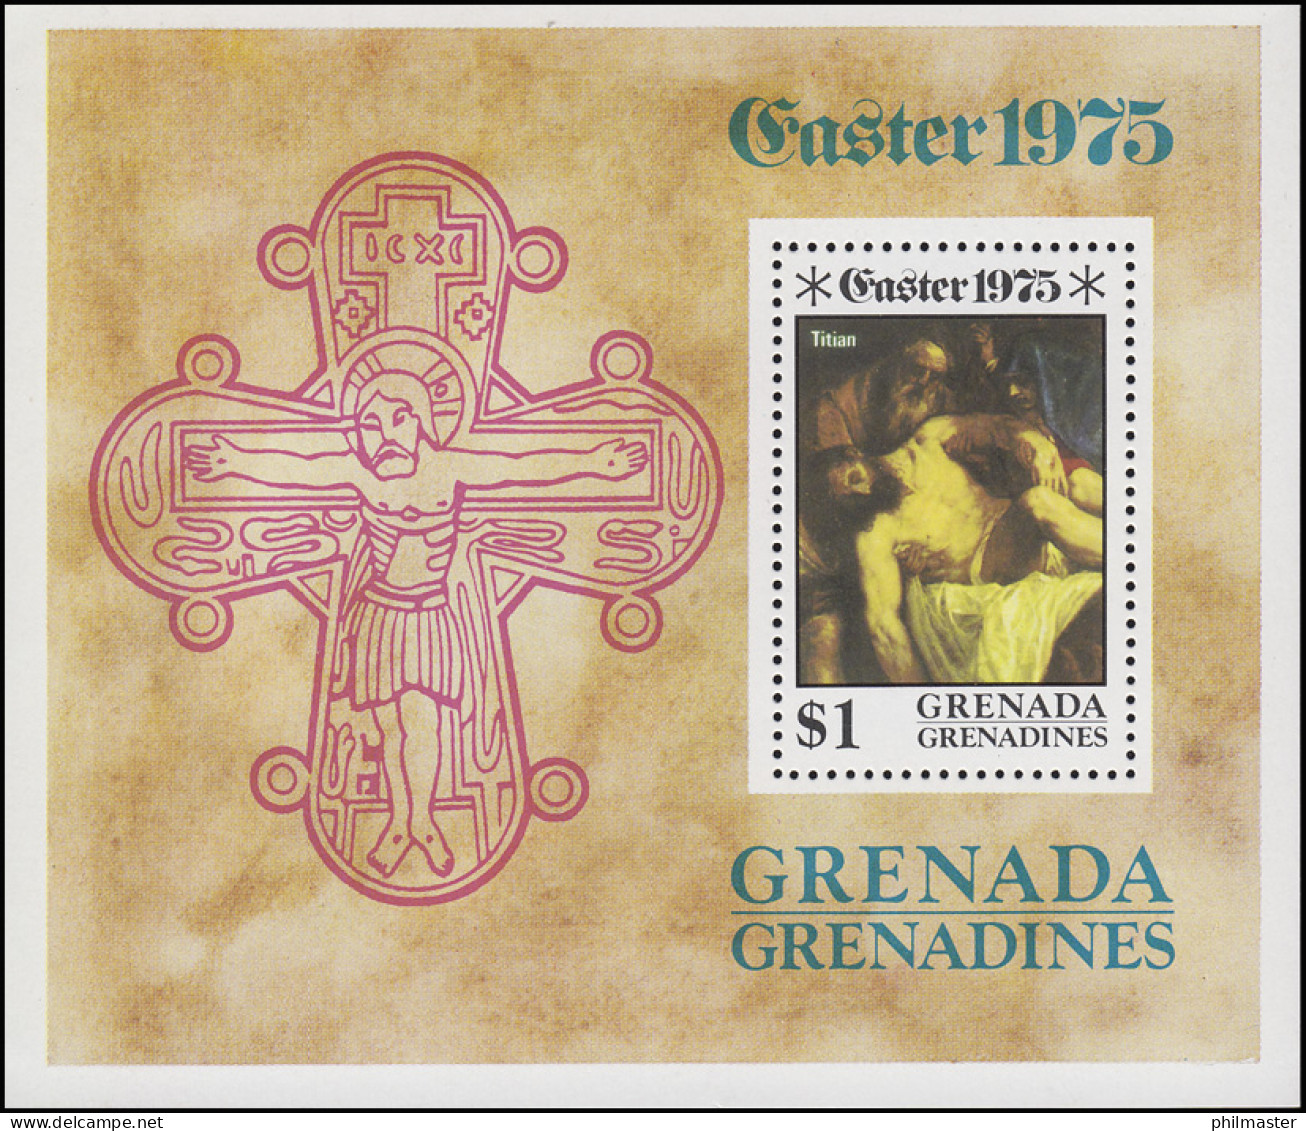 Grenadines: Ostern Easter - Die Kreuzigung Christi 1975, Block ** - Christianisme